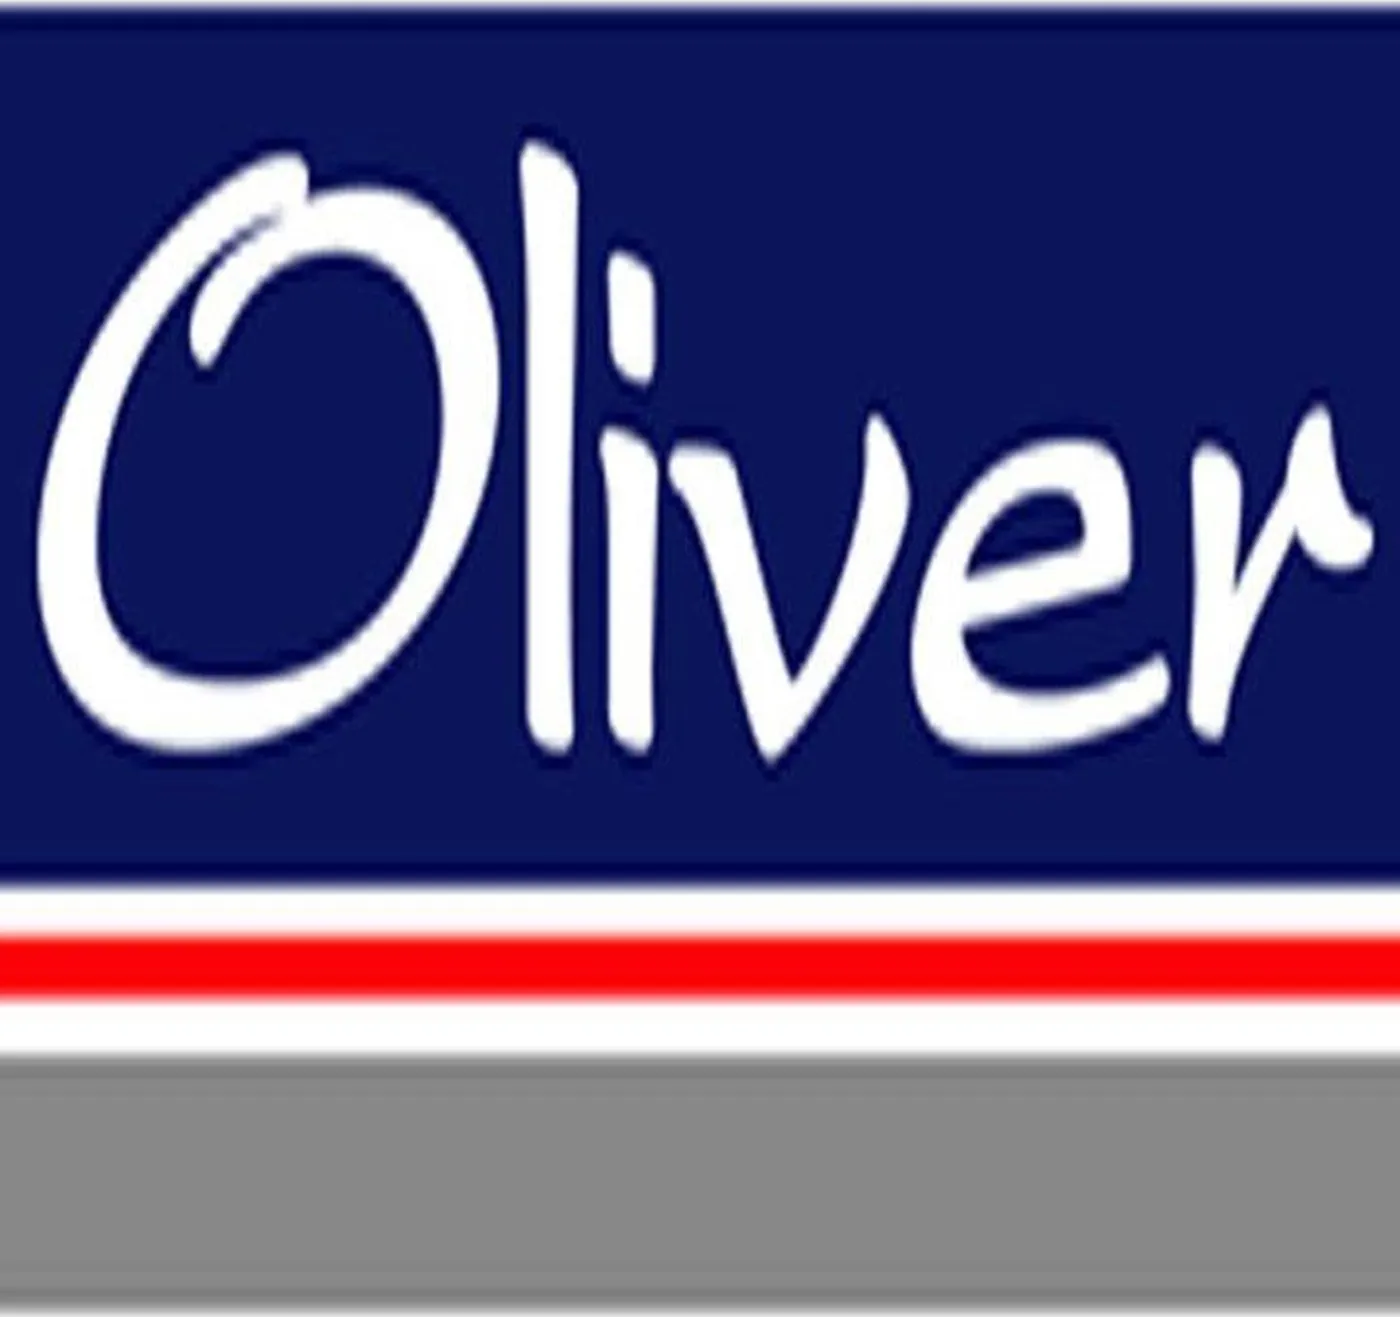 Oliver 720 678 70 s